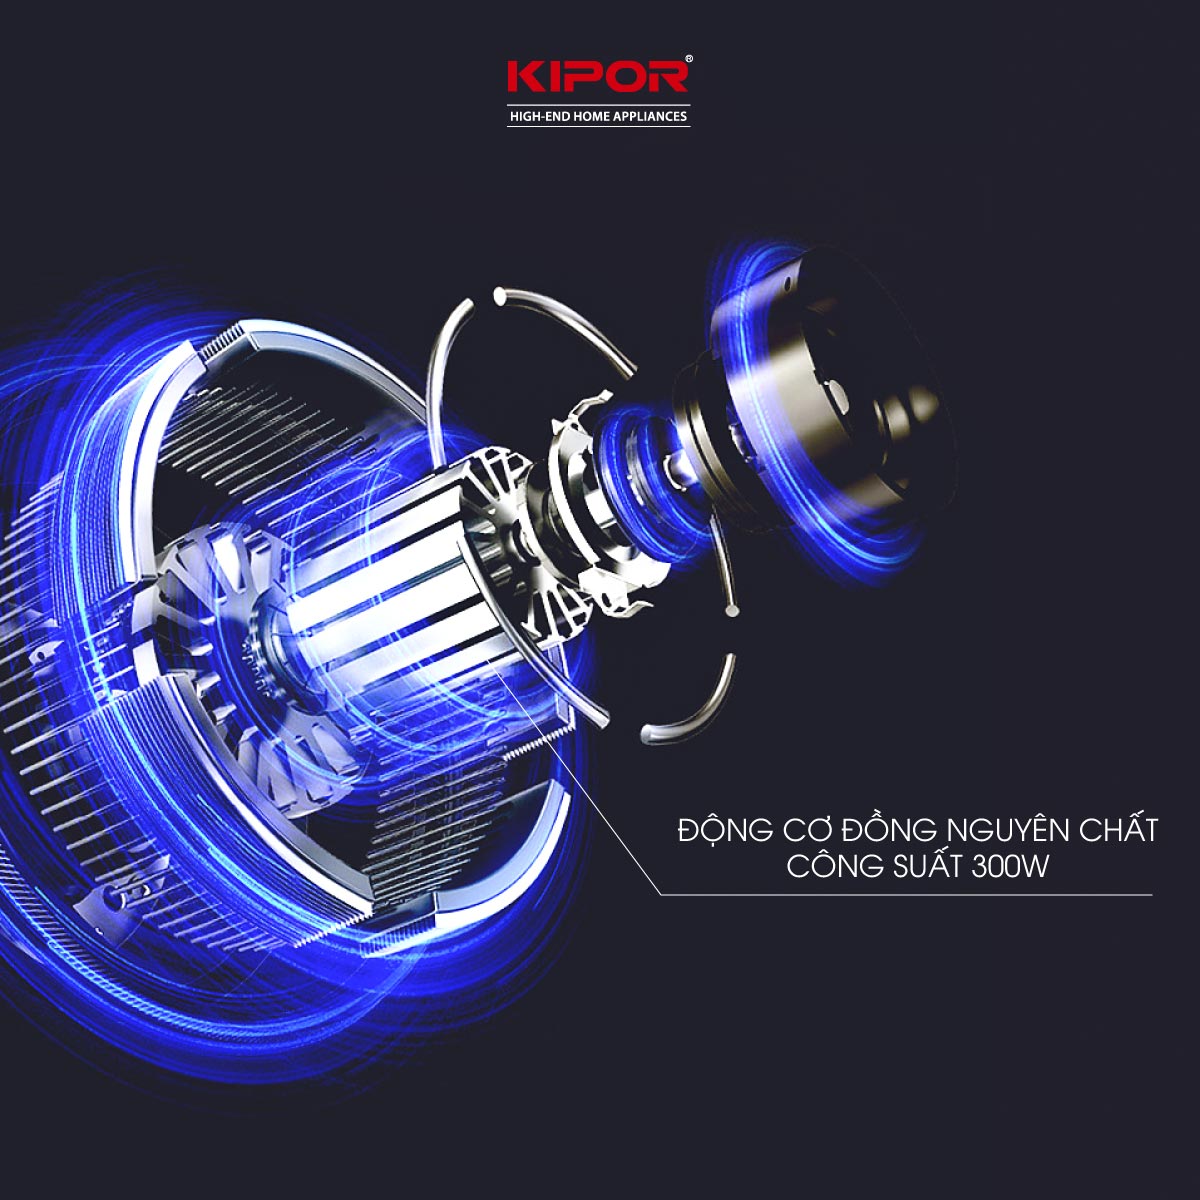 Máy ép chậm KIPOR KP-SJ595 - Chân đế chống rung lắc - Tặng lưới làm kem - Động cơ đồng nguyên chất công suất lớn -Hàng chính hãng